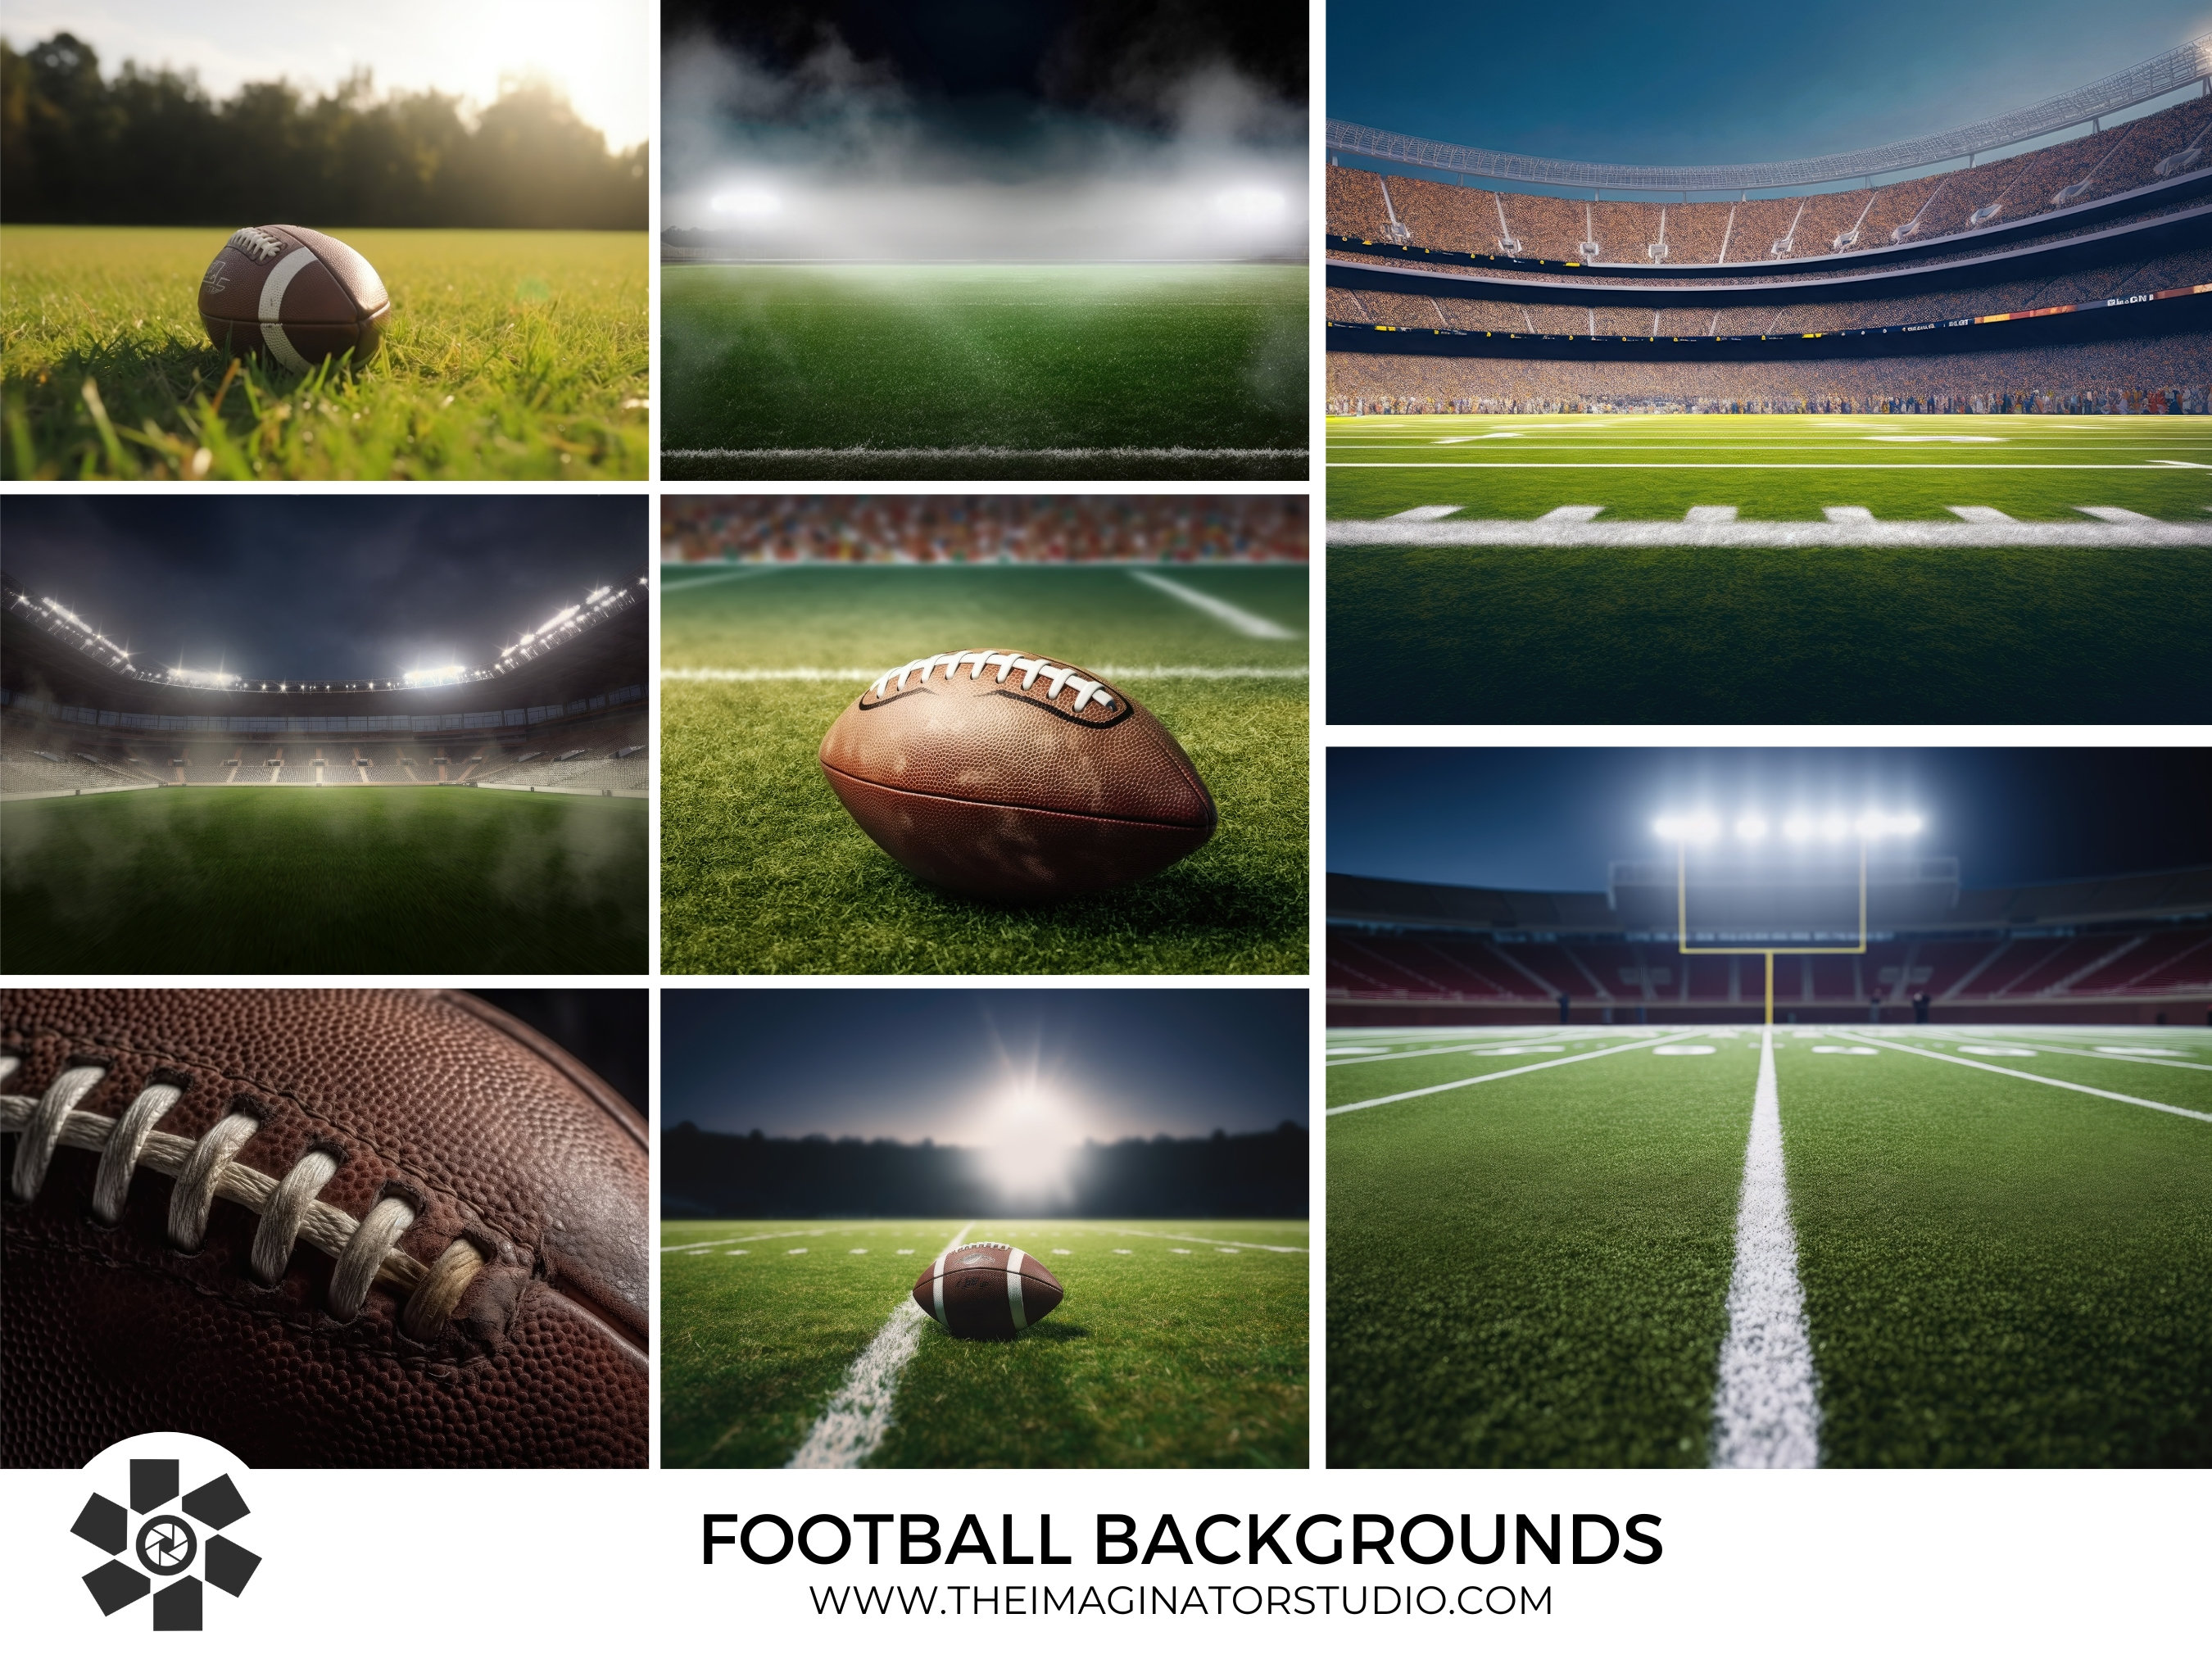 Football Background Photoshop - Etsy